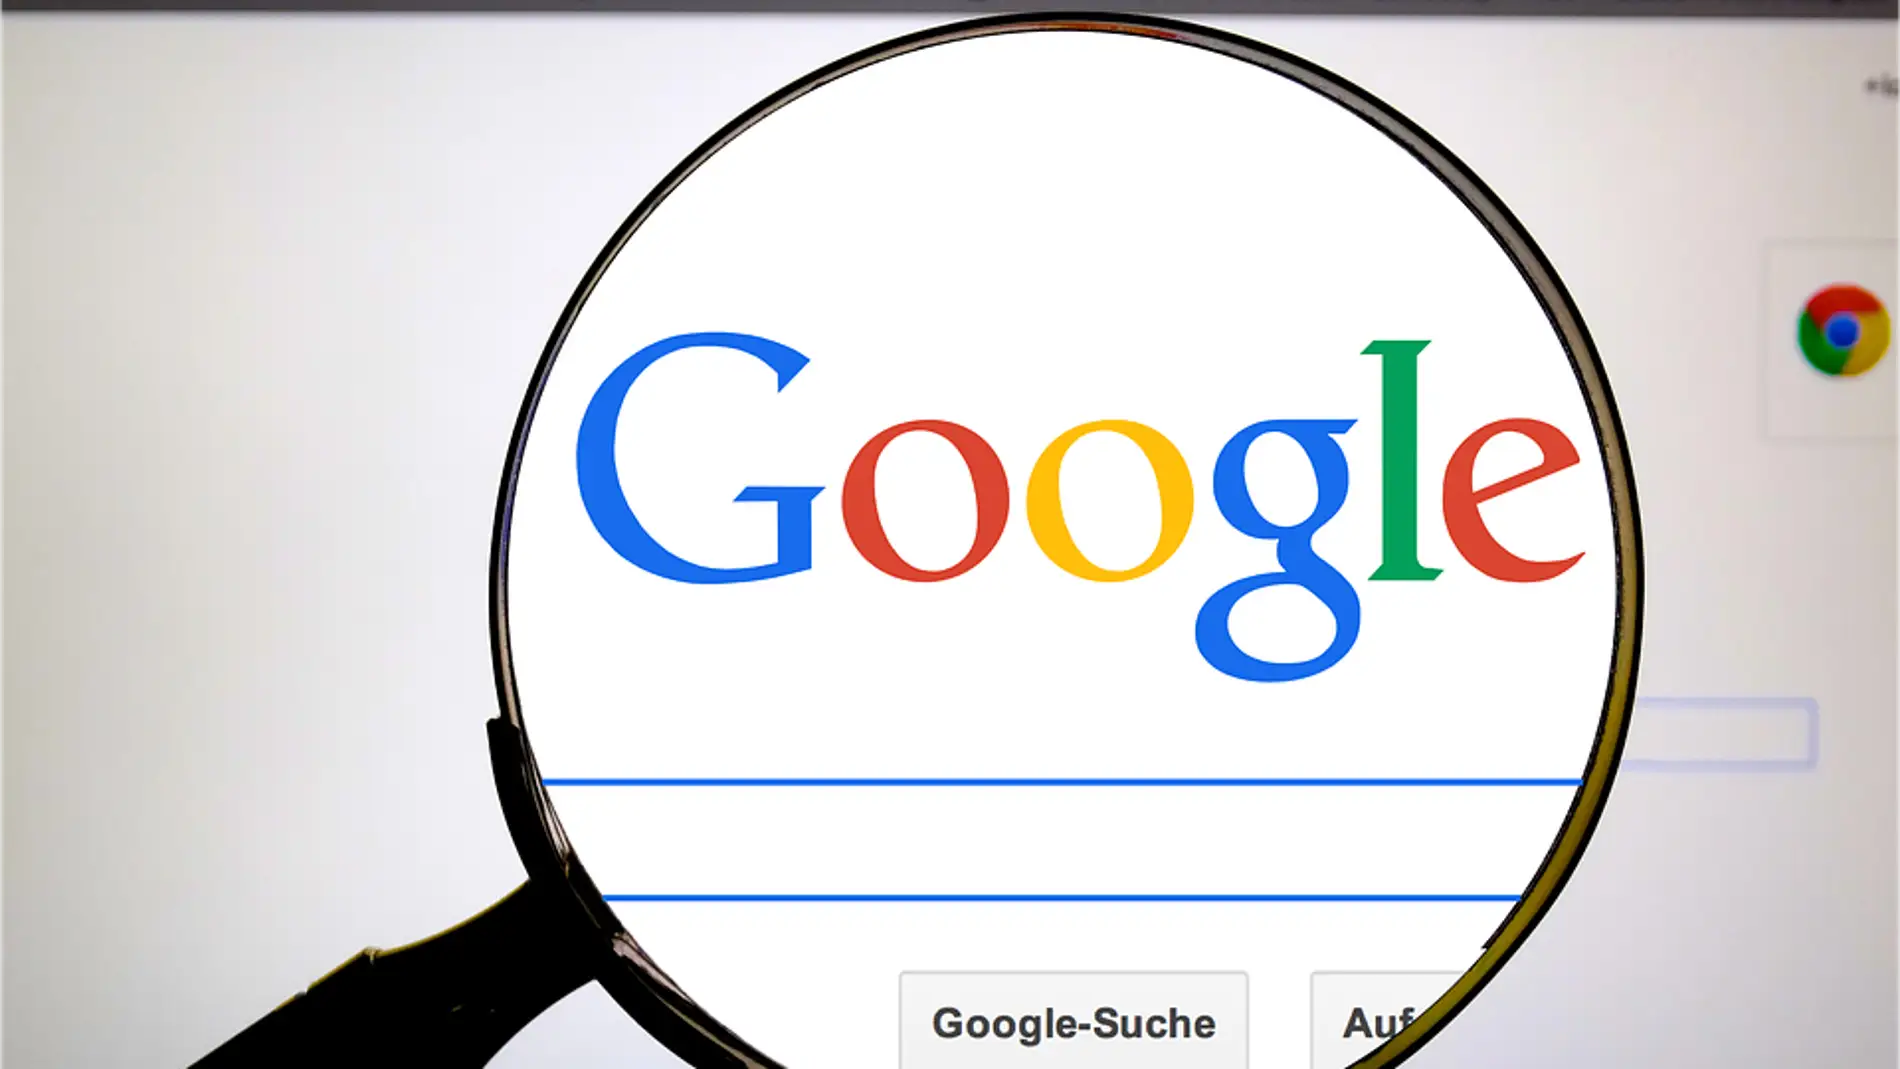 Google ha de hacer frente a las empresas que ofrecen servicios poco fiables en los enlaces promocionados